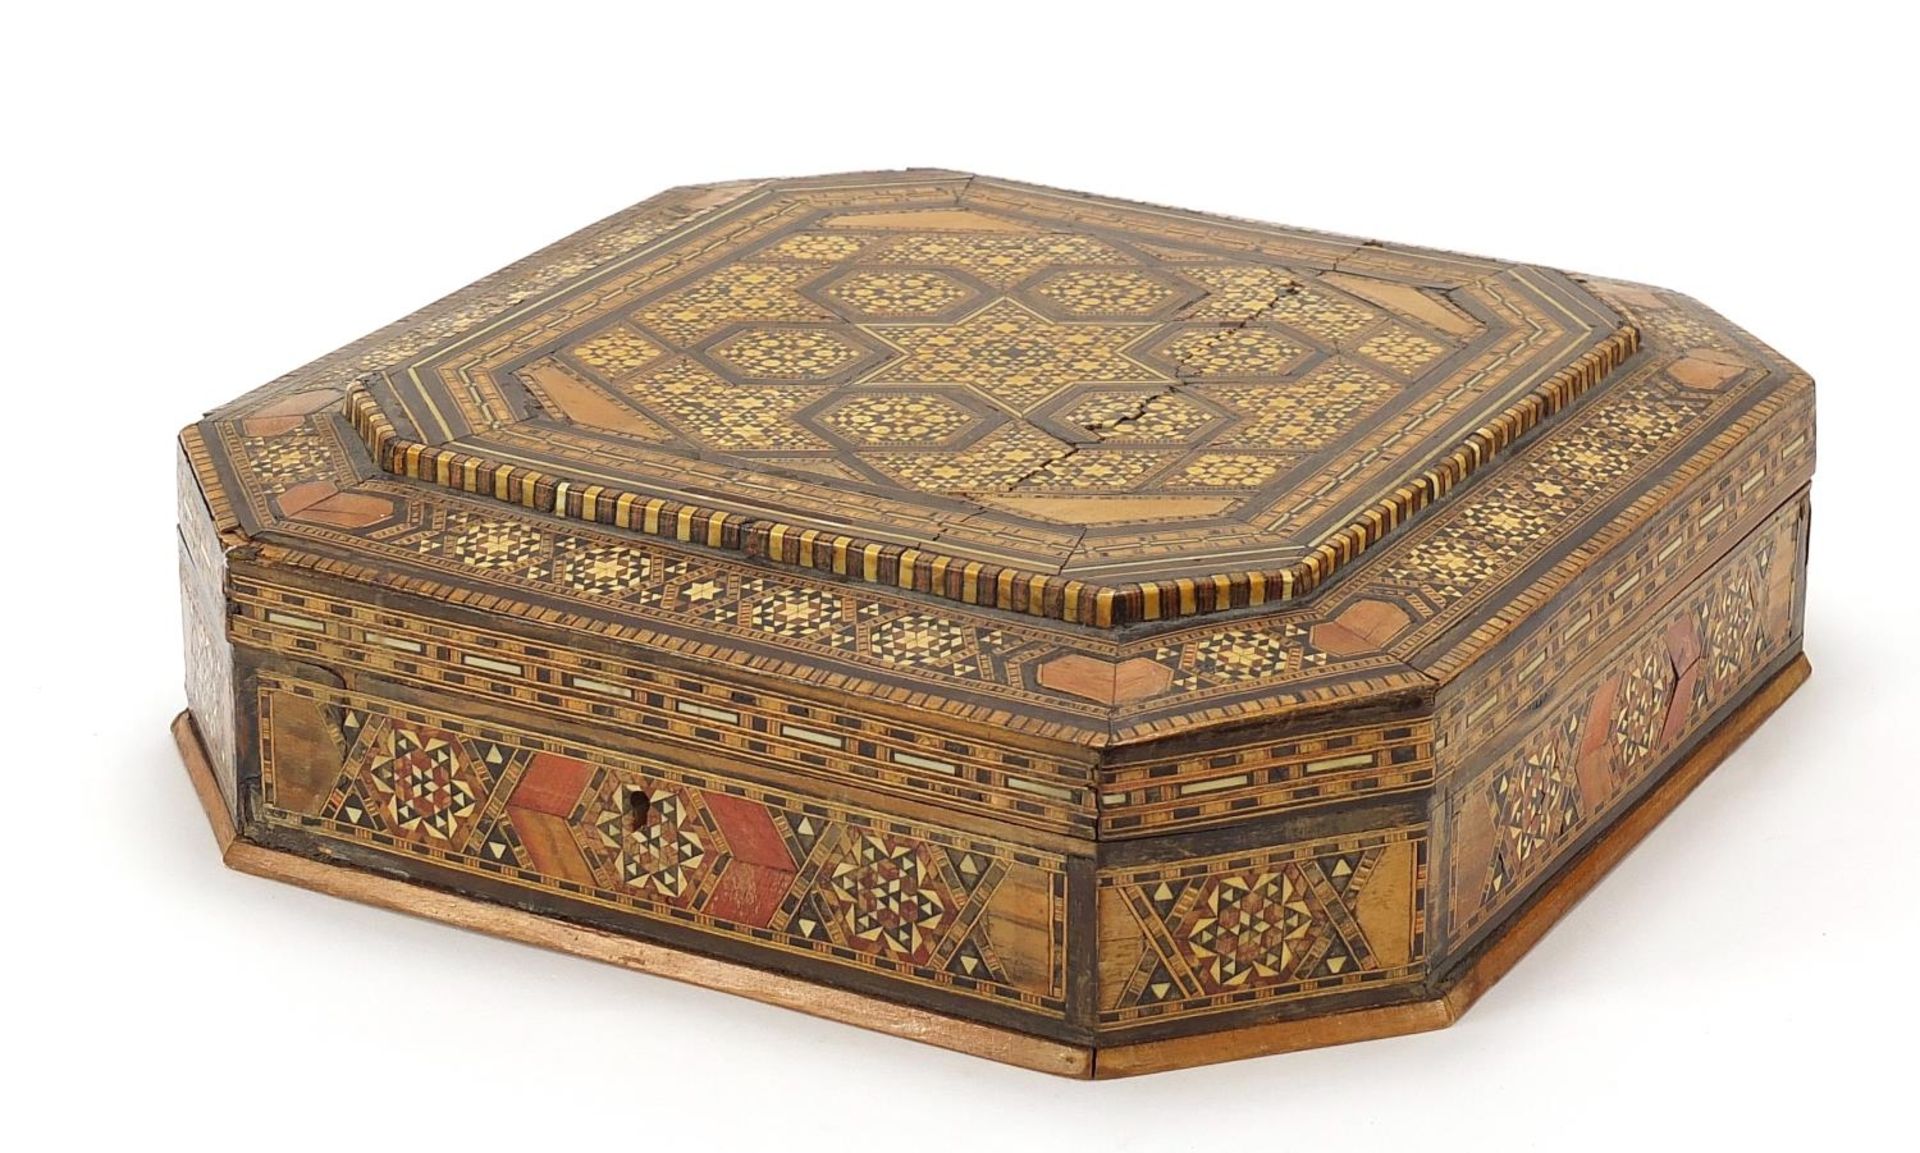 Syrian Moorish design casket with floral inlay, 8.5cm H x 28.5cm W x 29.5cm D